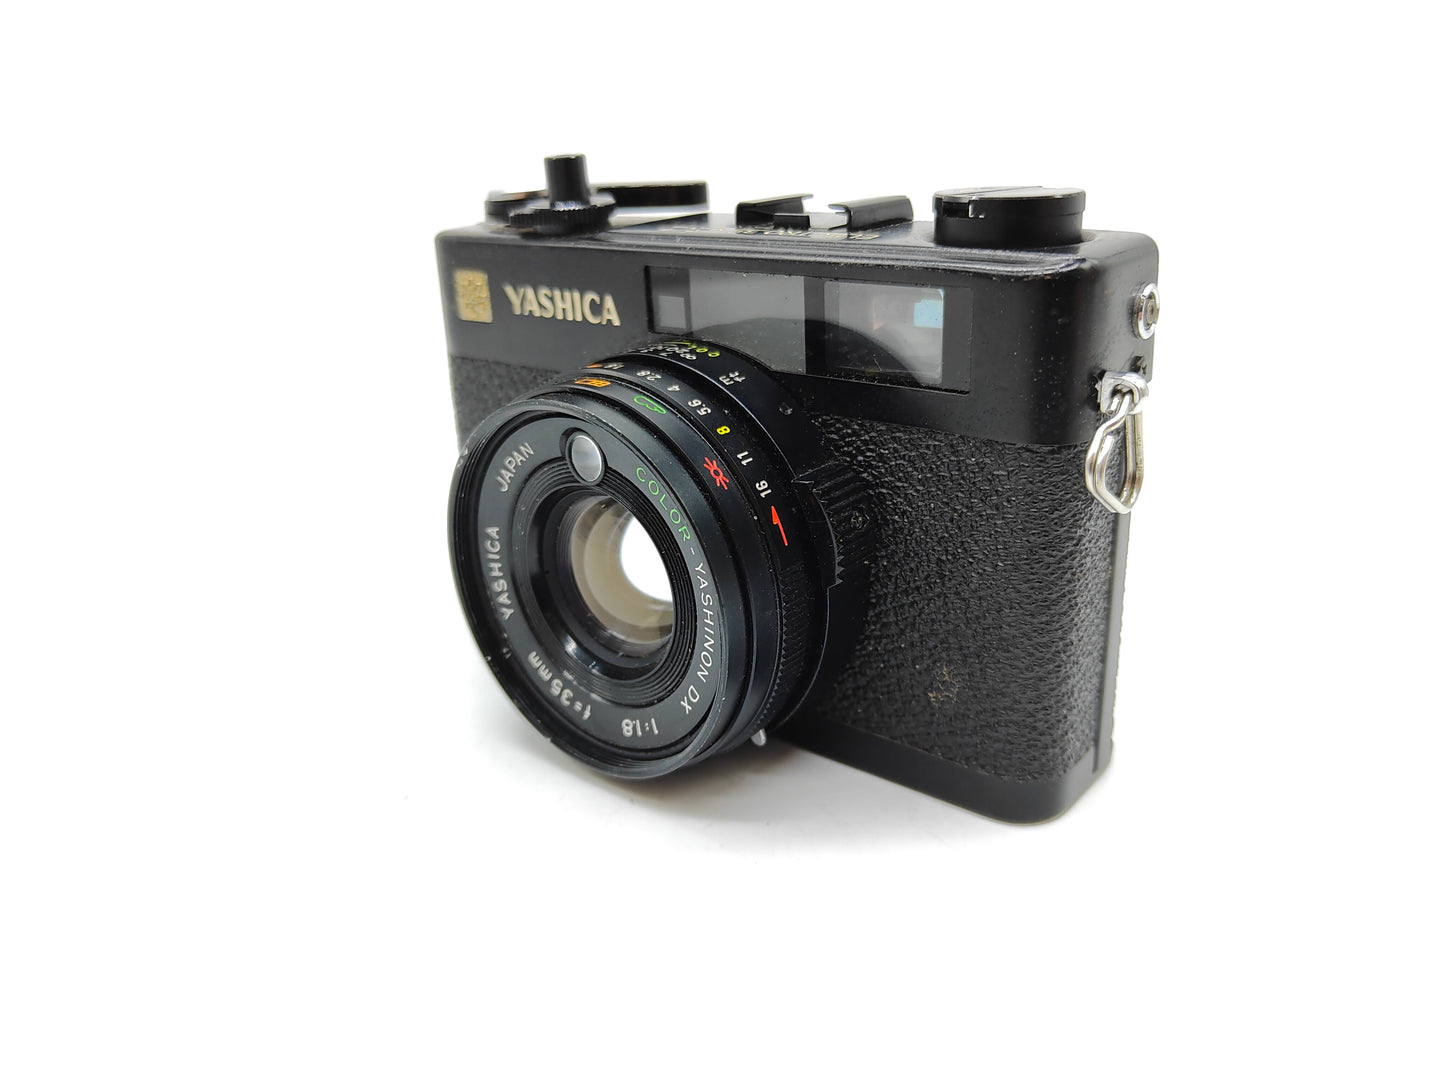 Yashica Electro 35 CC film camera